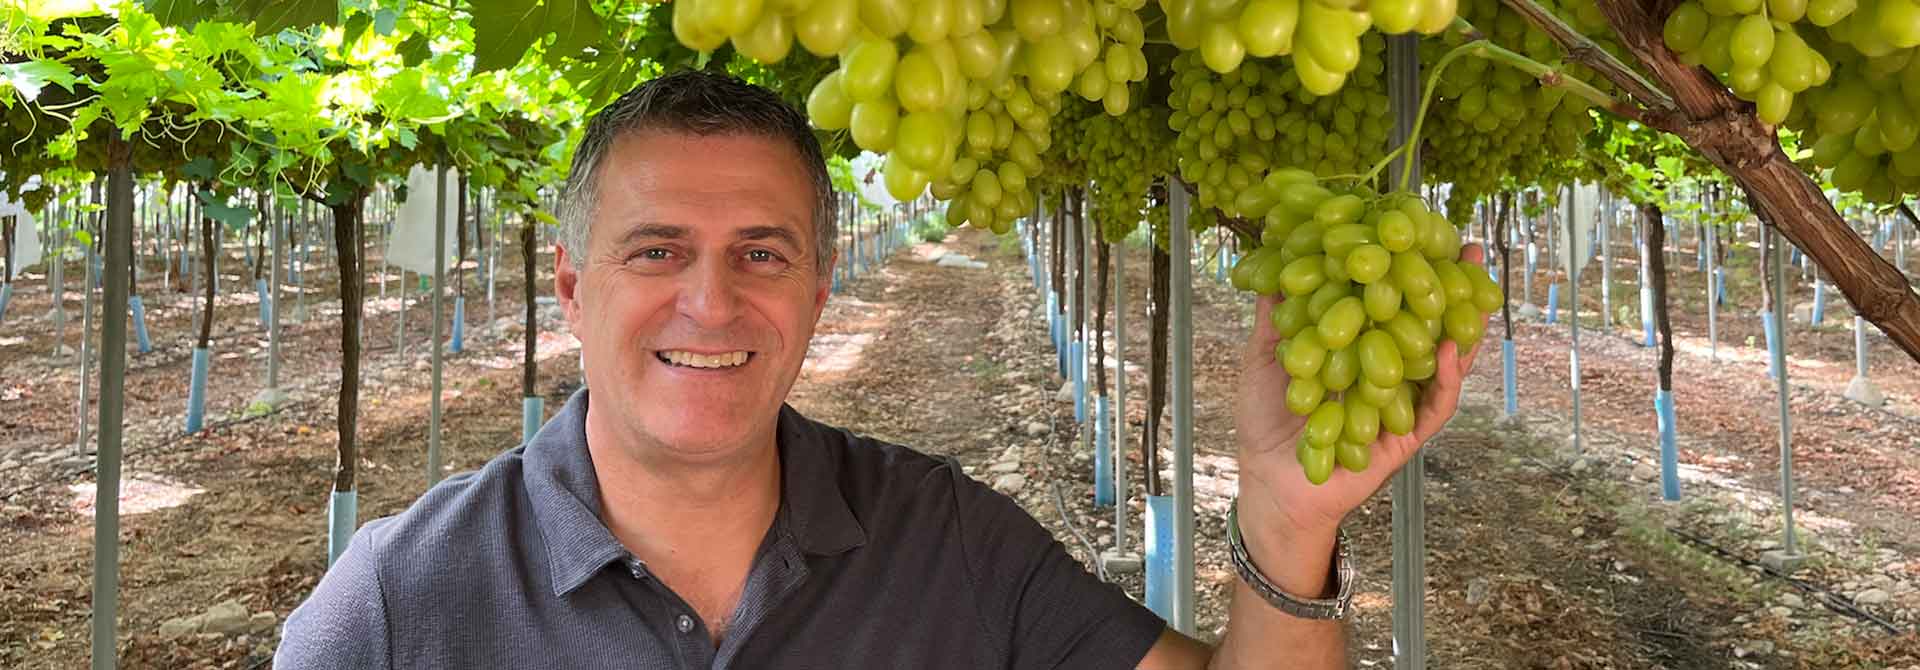 Tomas Rosatto presentando una uva nueva